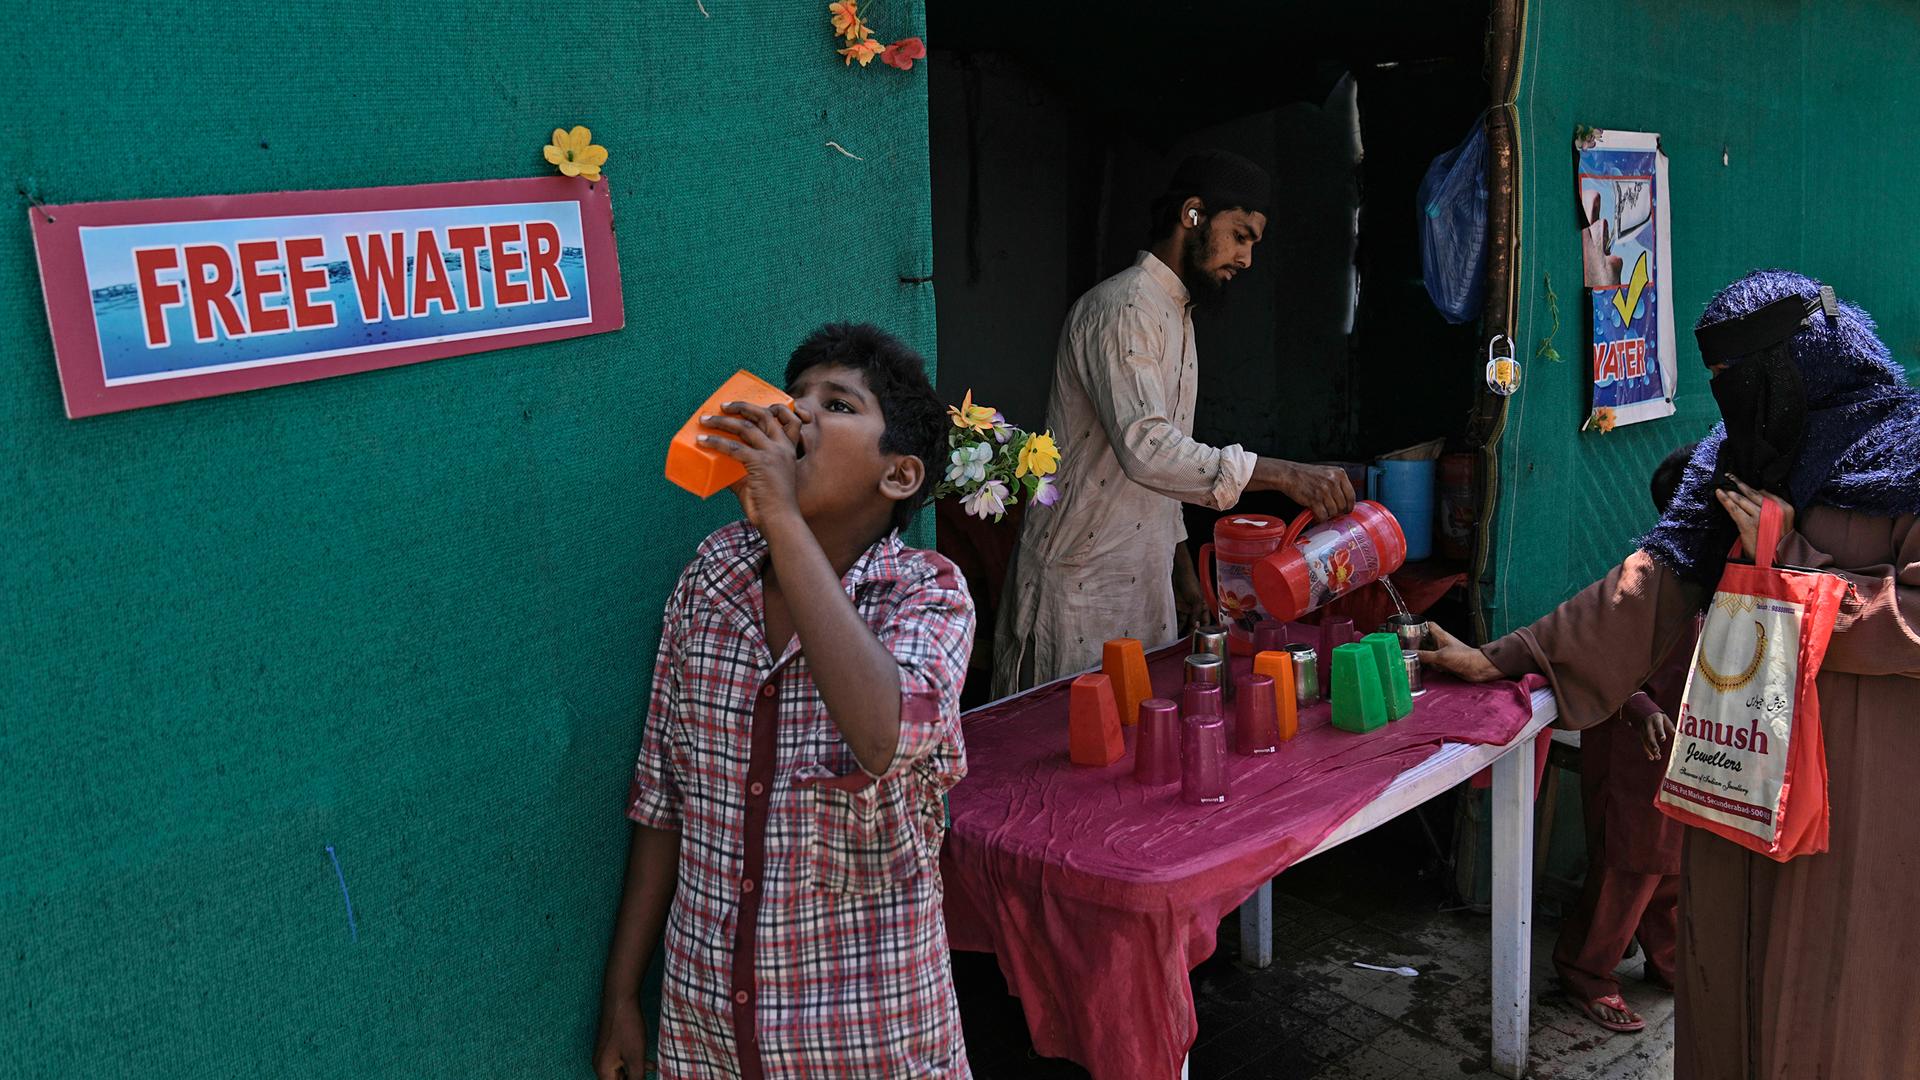 In Hyderabad (Indien) wird kostenloses Wasser wegen heißer Temperaturen ausgegeben